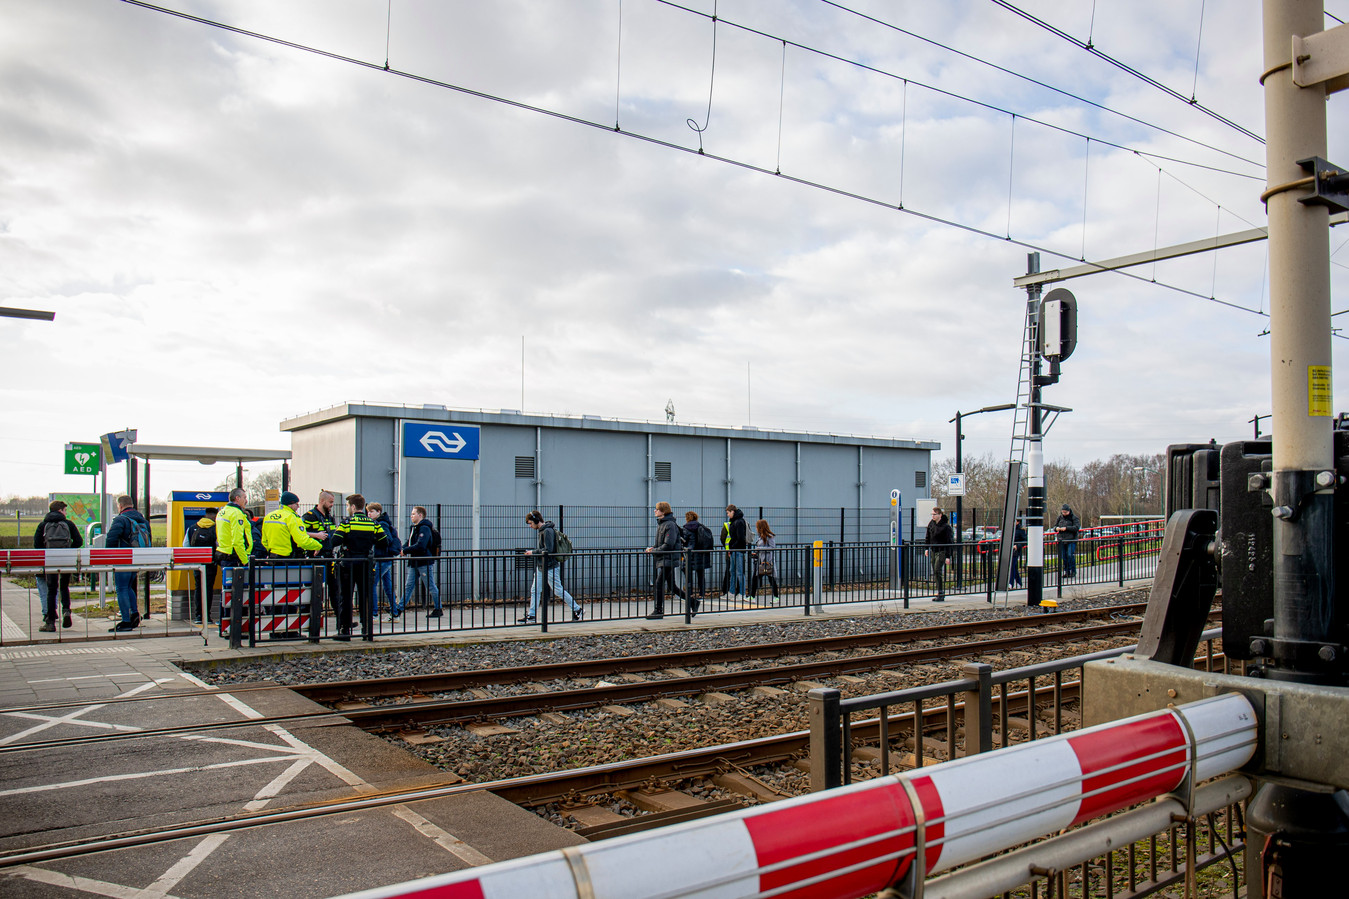 Stasiun NS Maarheeze dan pengamanan oleh polisi Belanda (berseragam hitam dengan aksen garis kuning berpendar) pada akses pintu keluar masuk stasiun | Foto: Doris van Gool via DCI Media